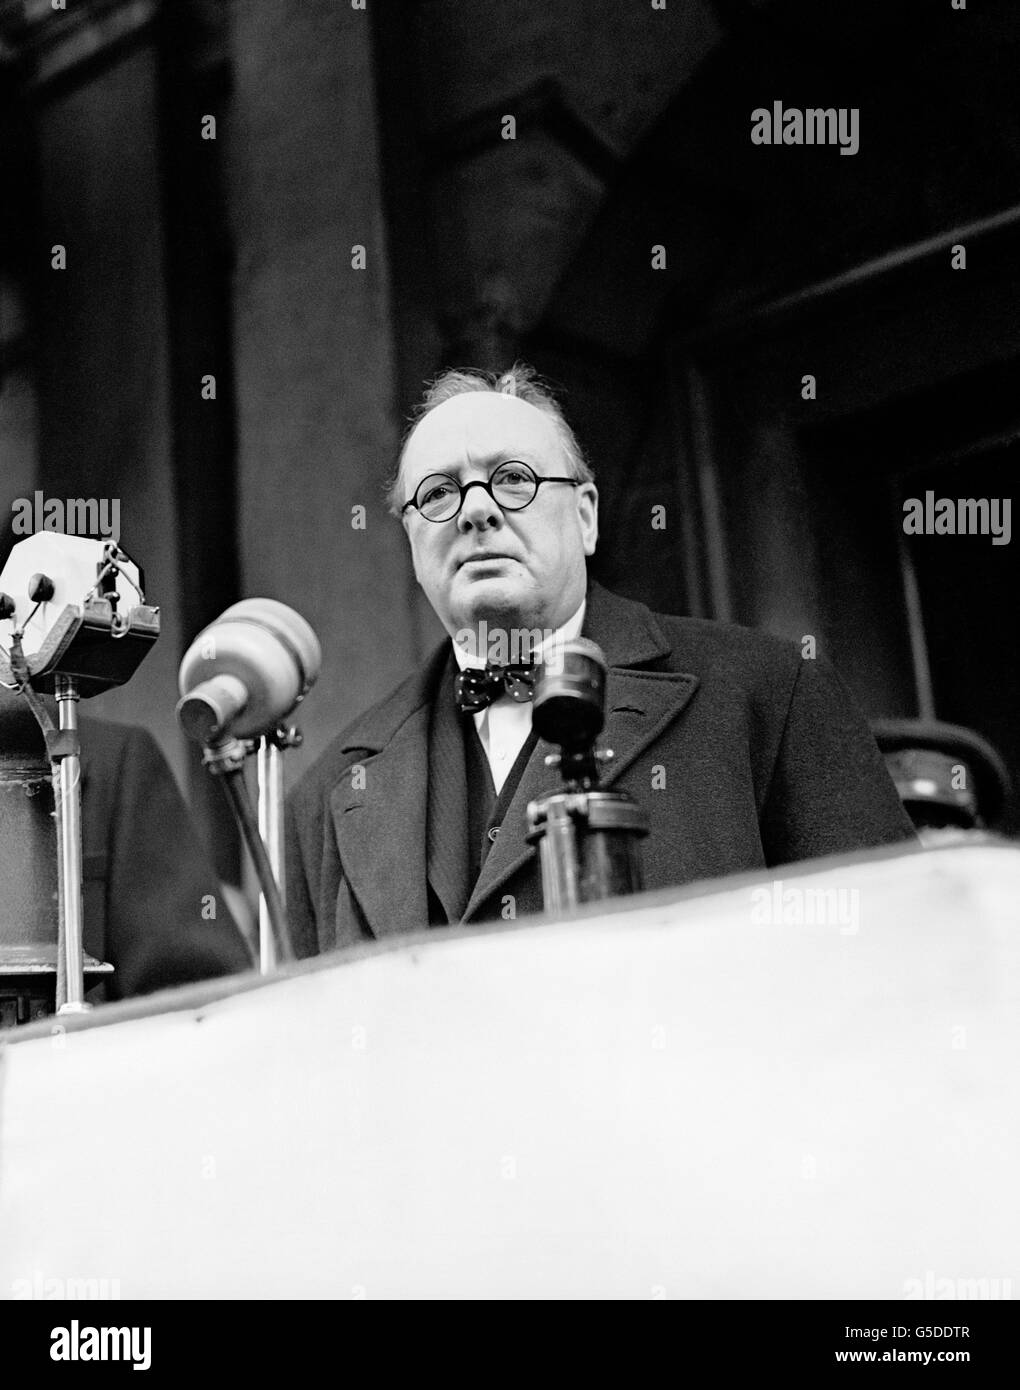 Winston Churchill s'adresse à une réunion de recrutement à la Mansion House, Londres, pendant la crise européenne (l'accumulation de la Seconde Guerre mondiale). Banque D'Images